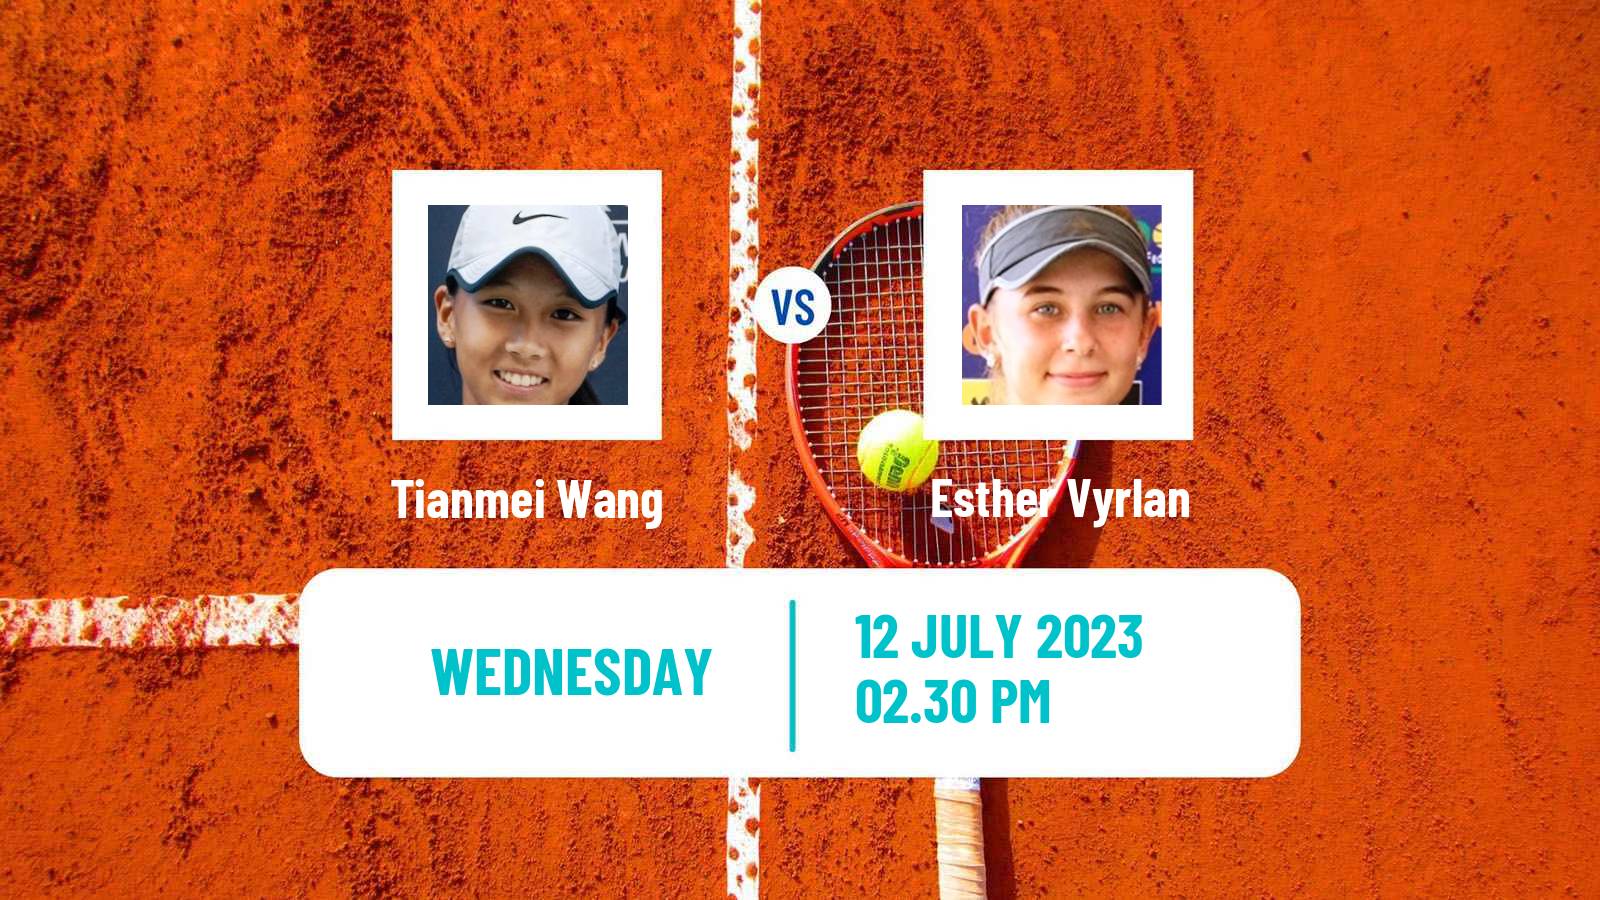 Tennis ITF W15 Lakewood Ca 2 Women Tianmei Wang - Esther Vyrlan